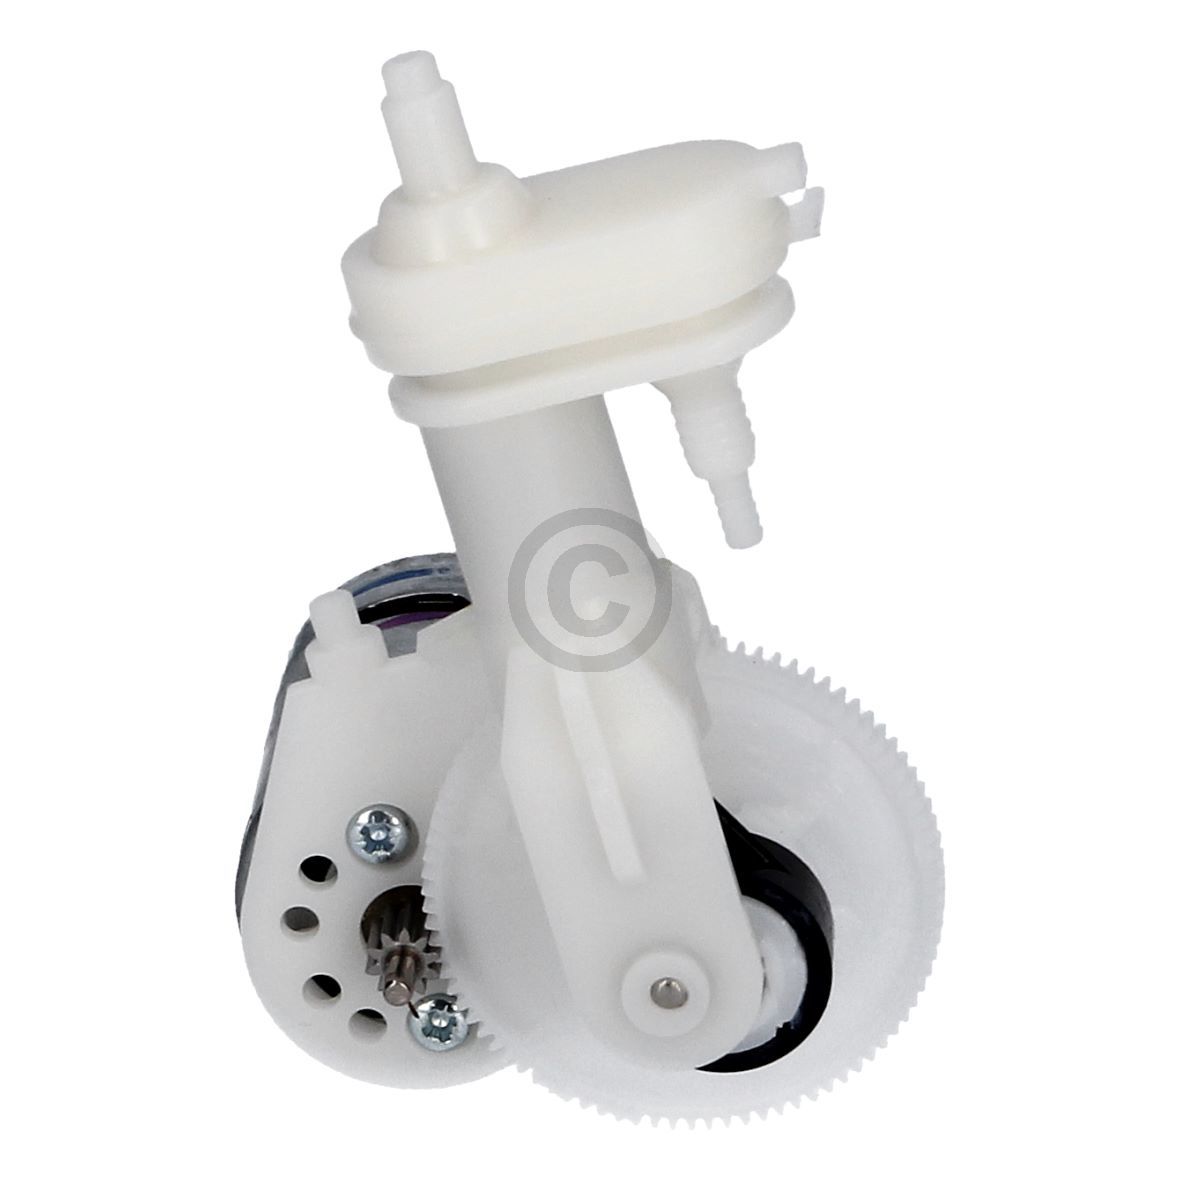 Pumpe BRAUN 81626035 für Oral-B Reinigungssystem Munddusche WaterJet